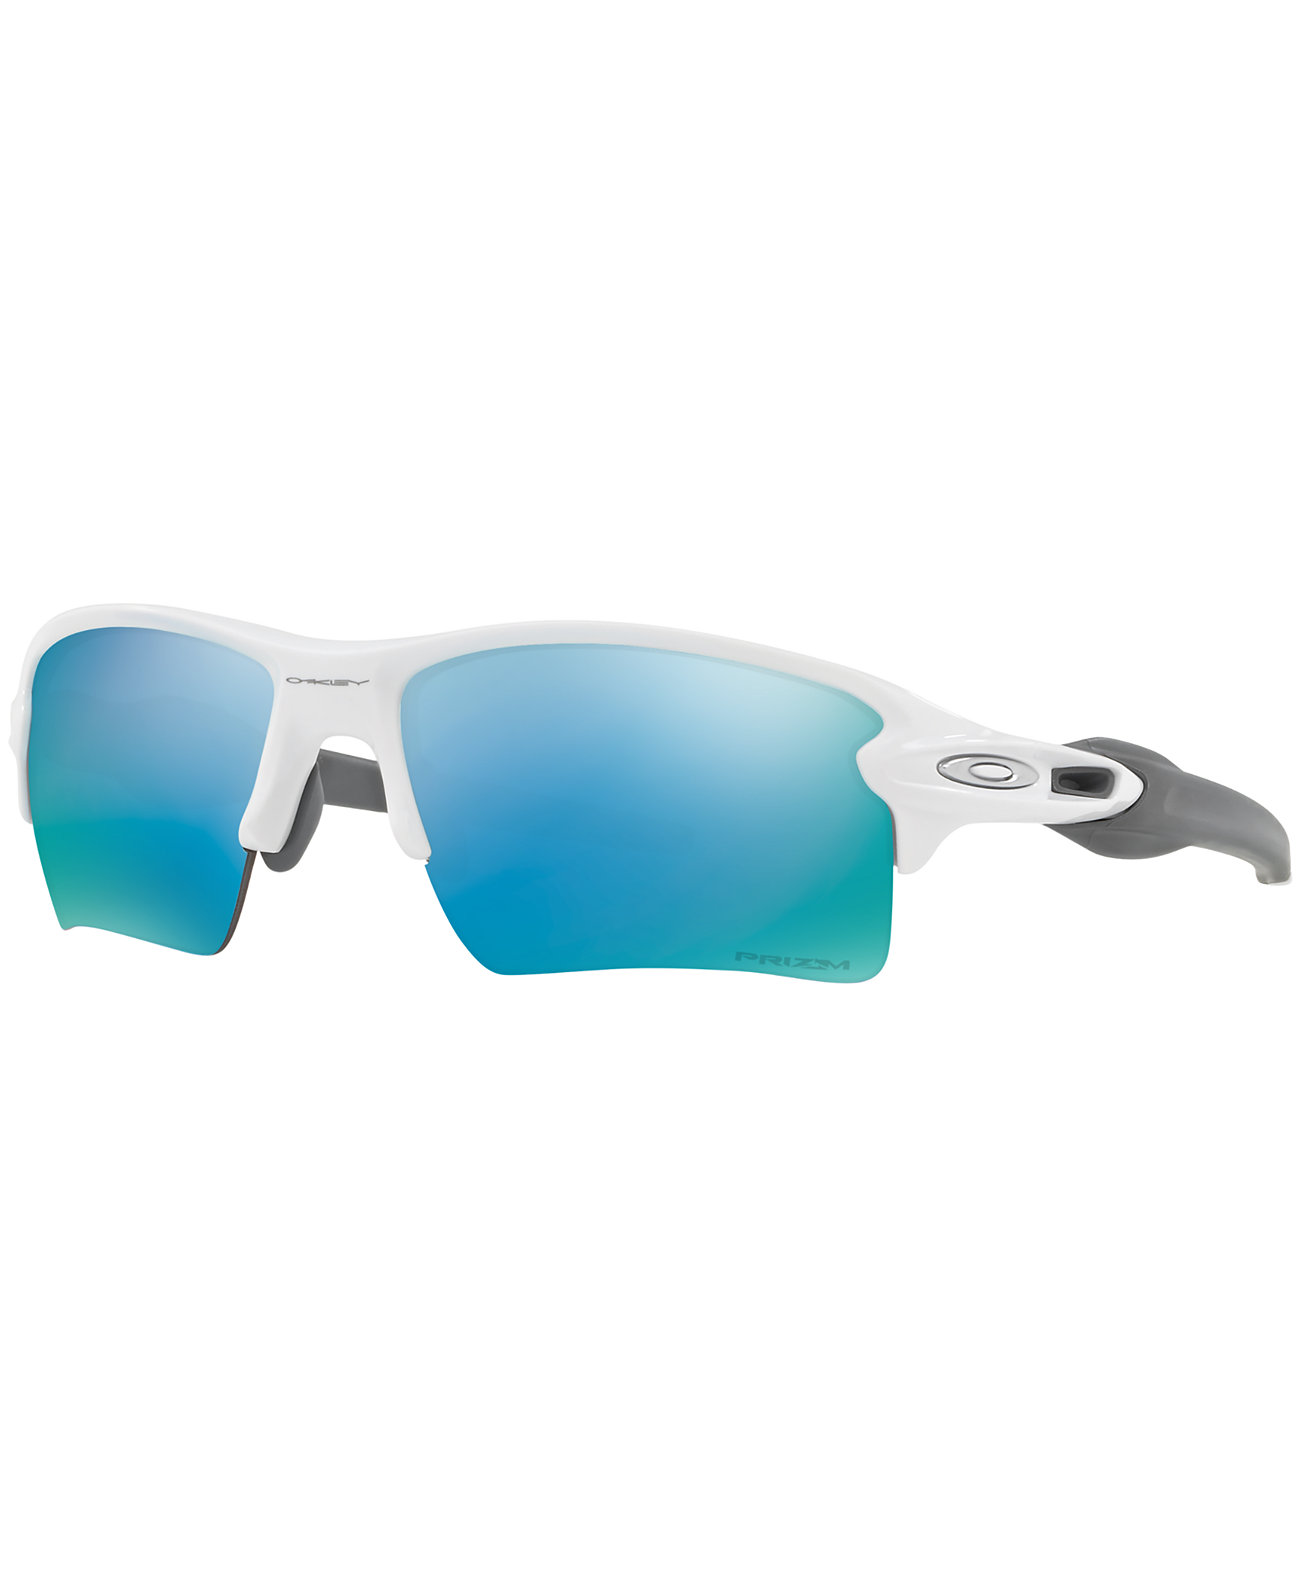 Поляризованные солнцезащитные очки, FLAK 2 XL OO9188 Oakley